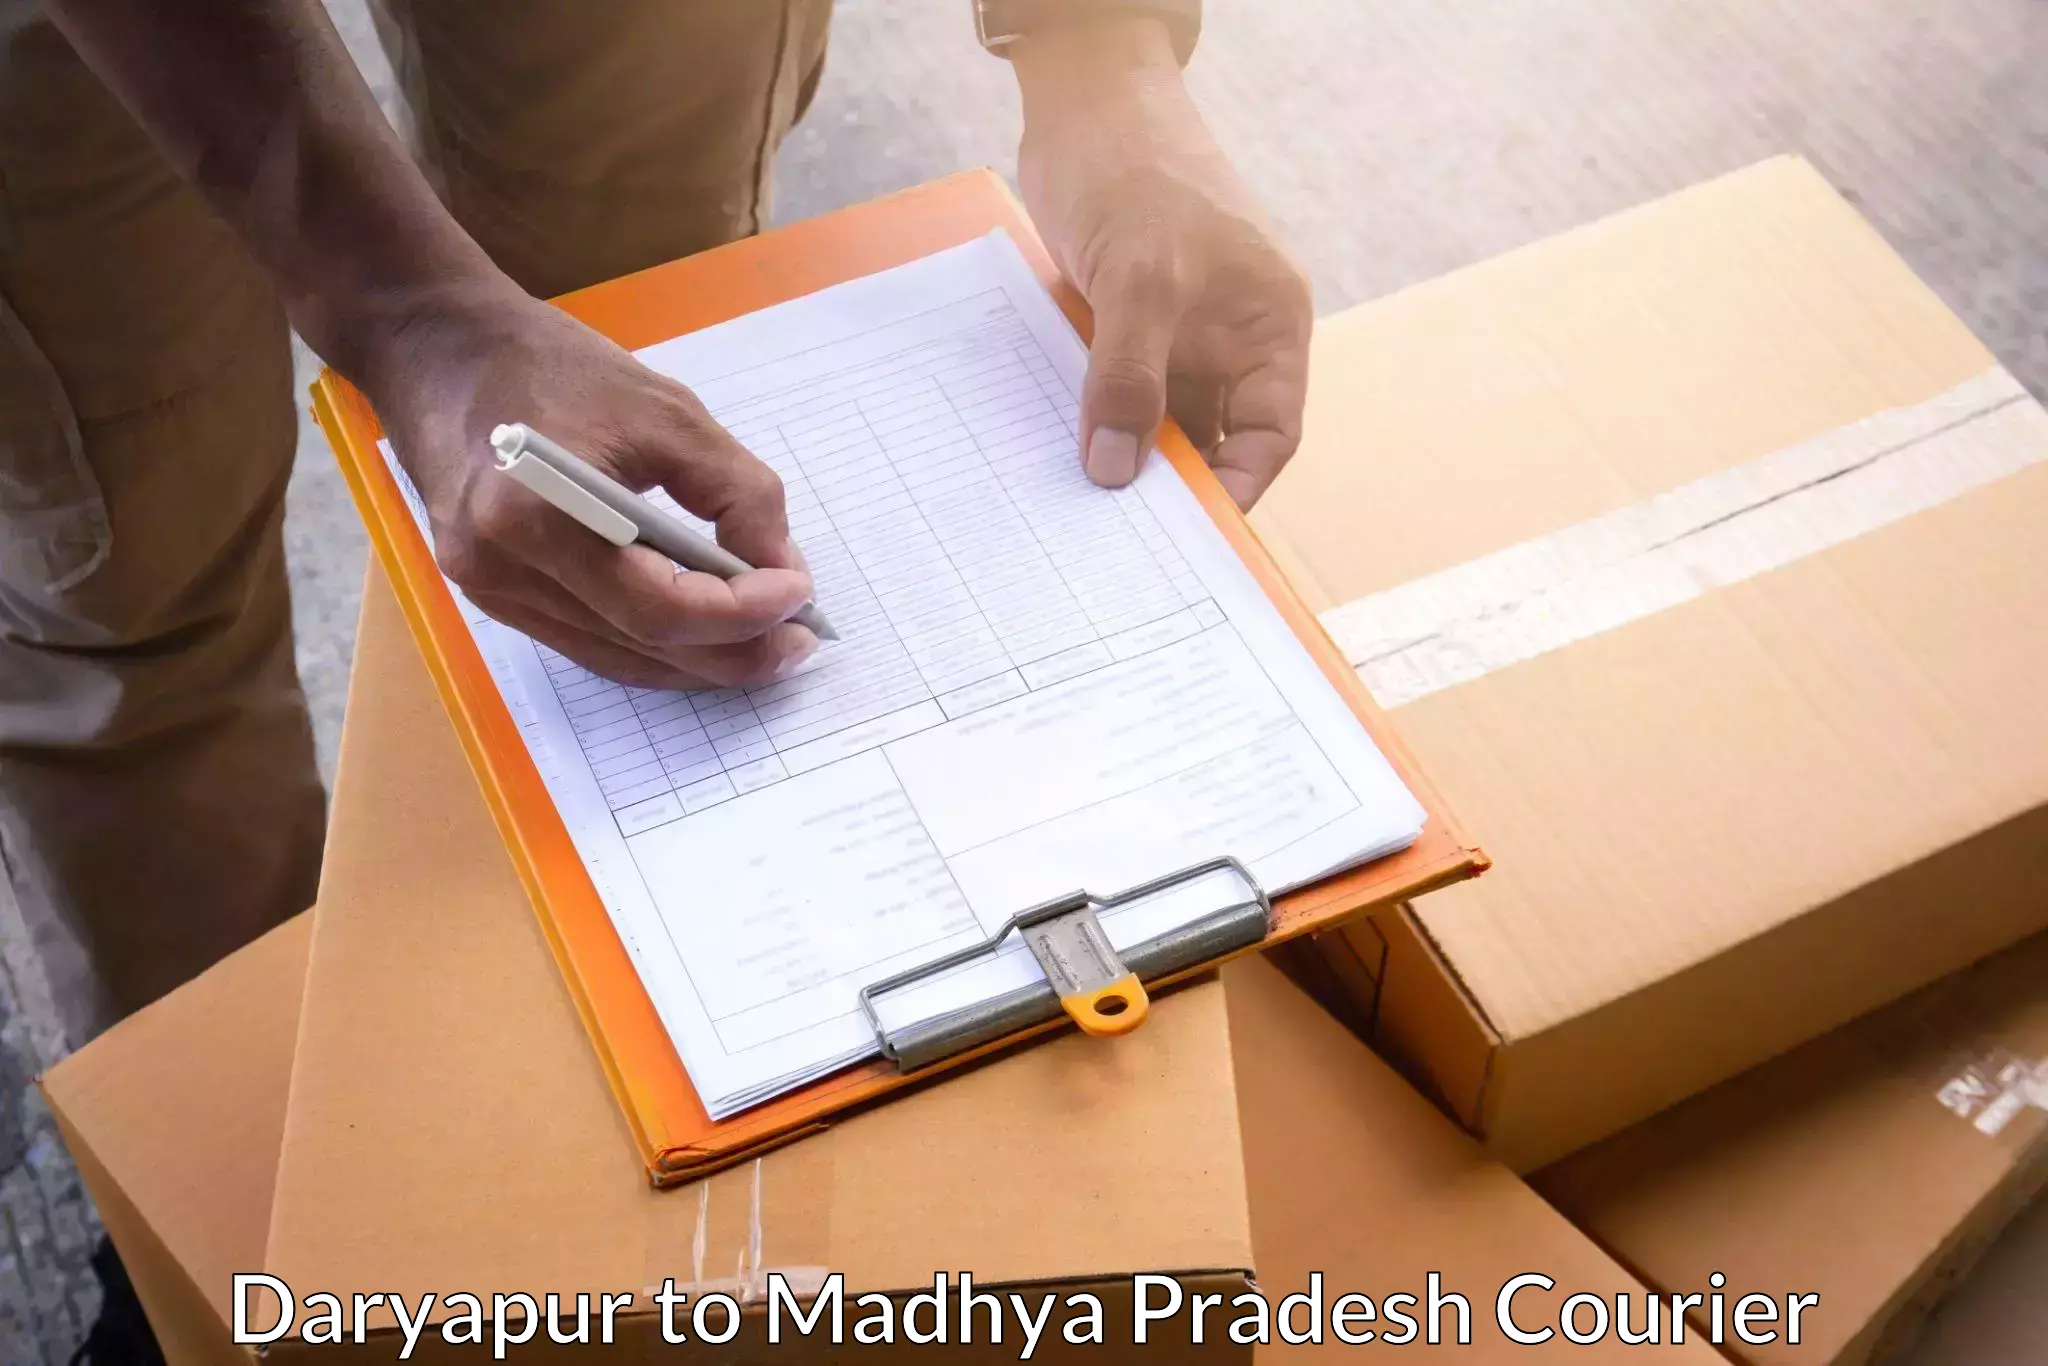 Bulk shipment Daryapur to Jatara